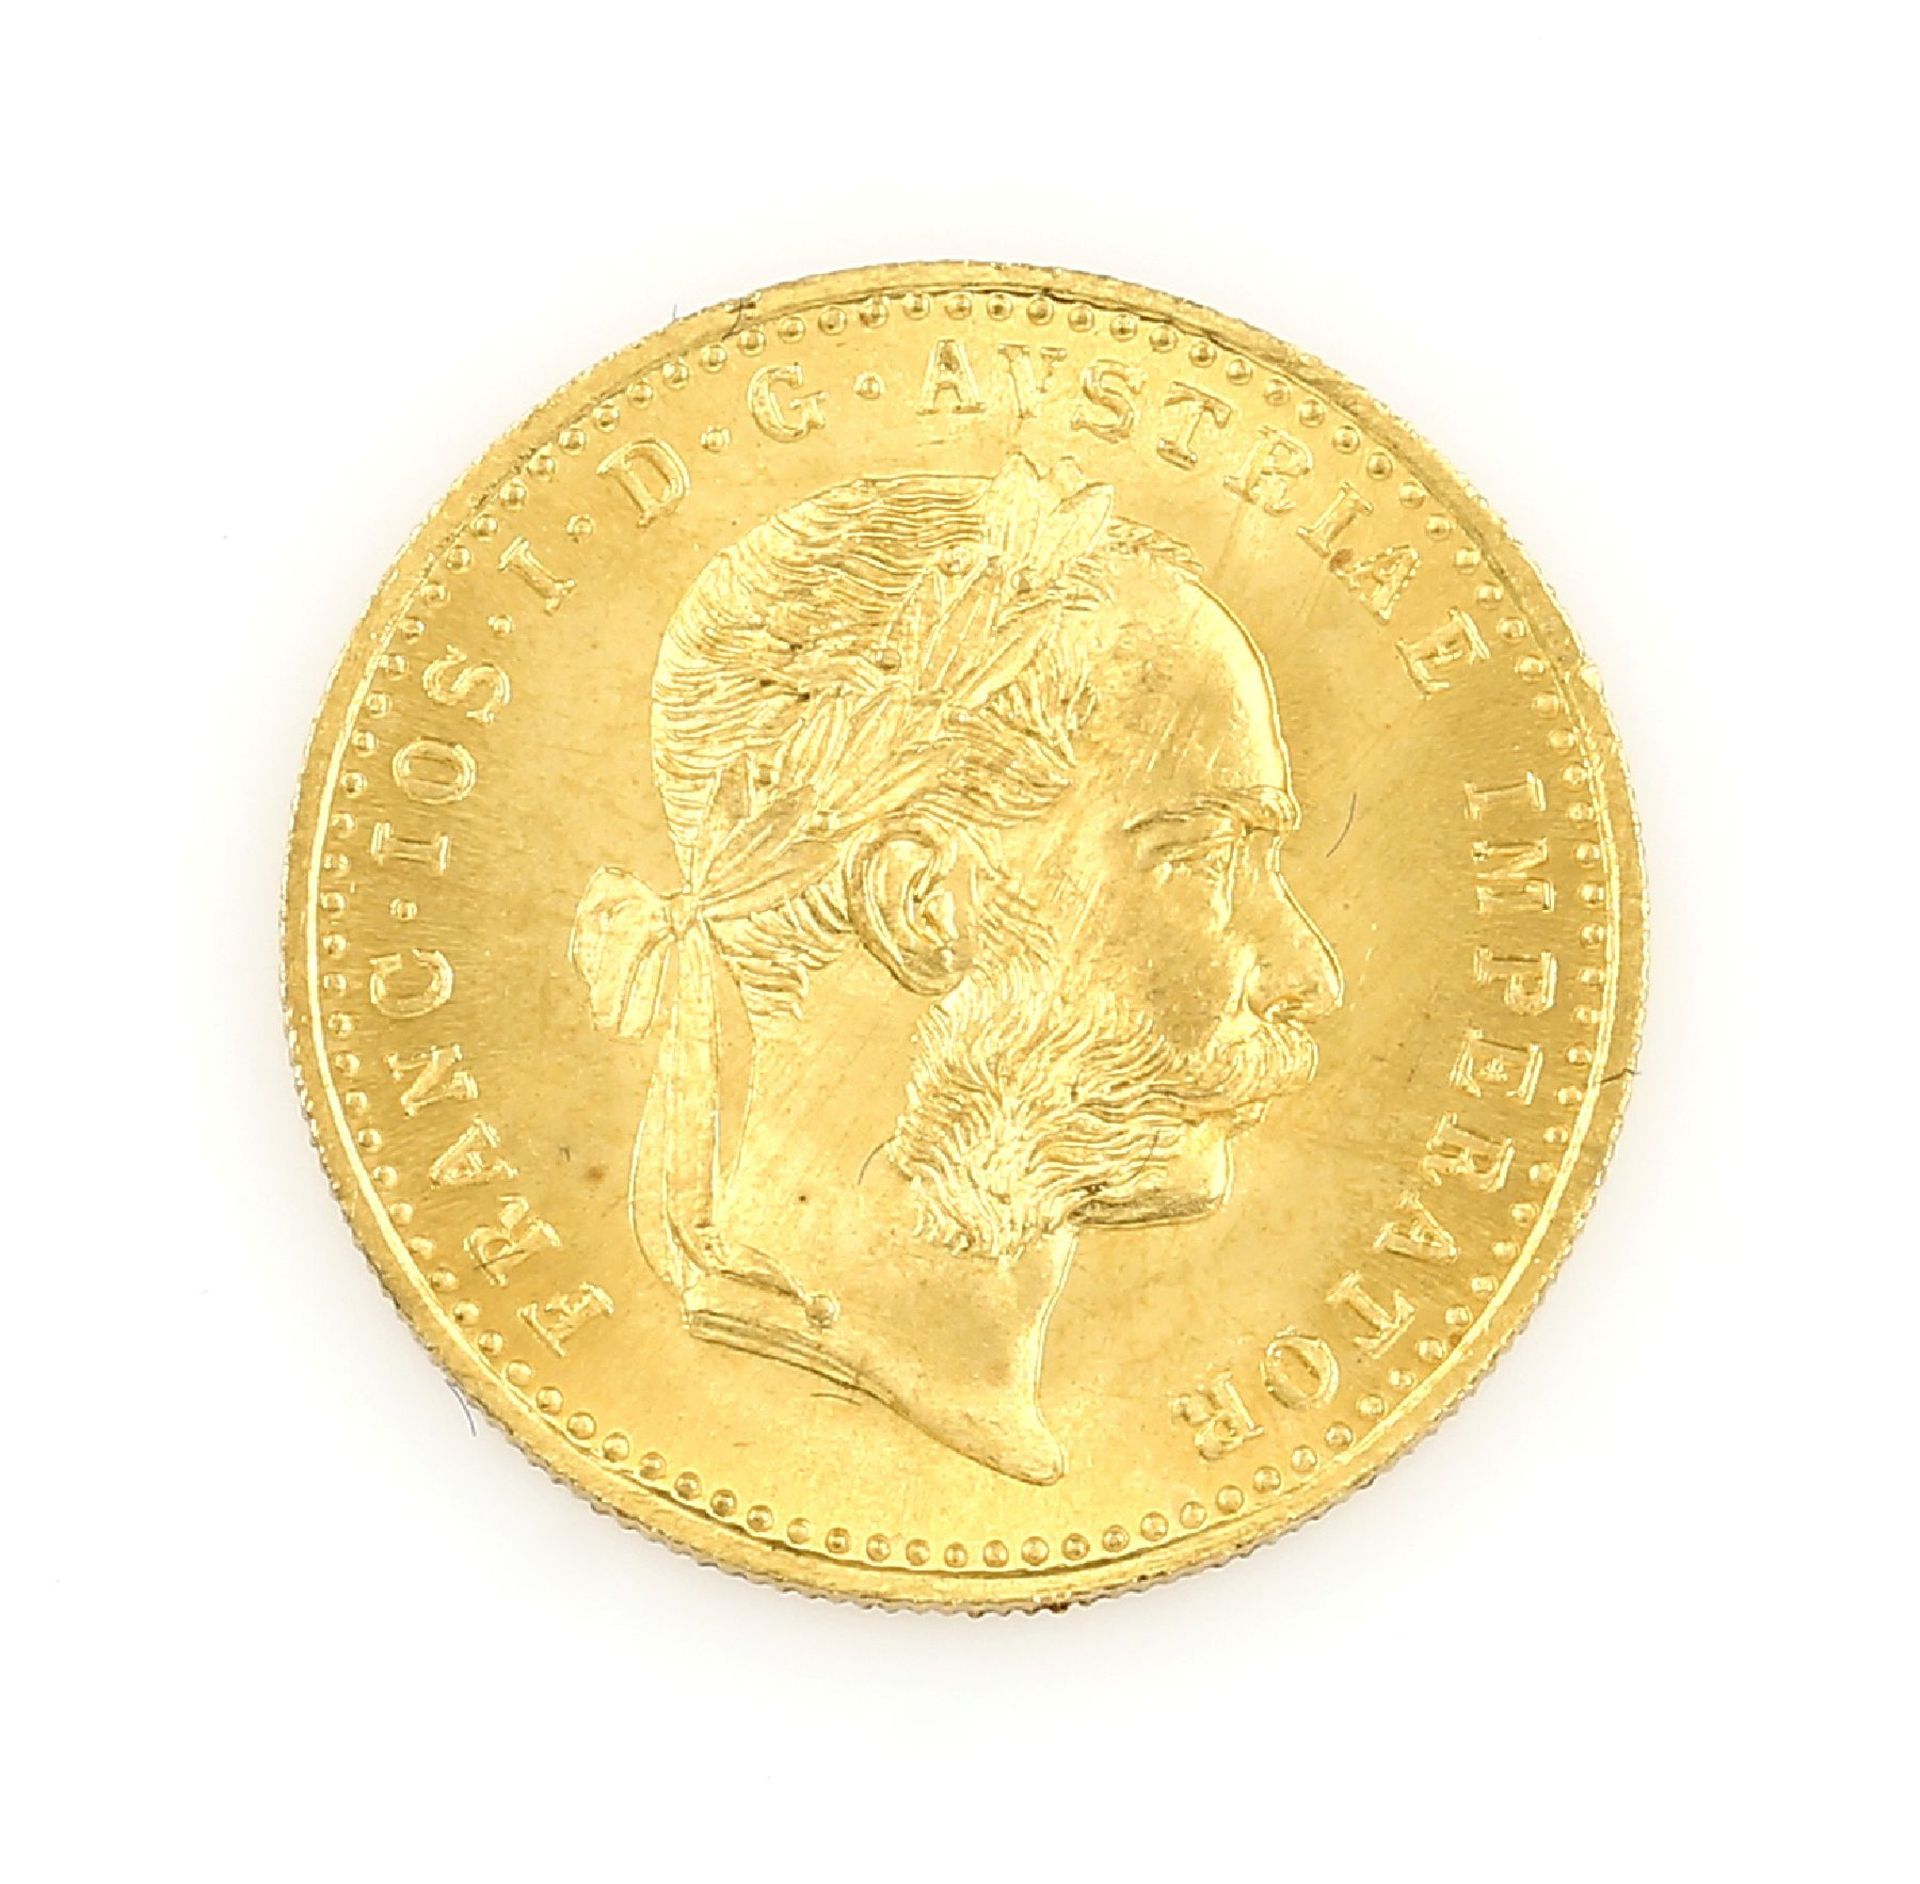 Goldmünze, 1 Dukat, Österreich-Ungarn, 1915, Franz